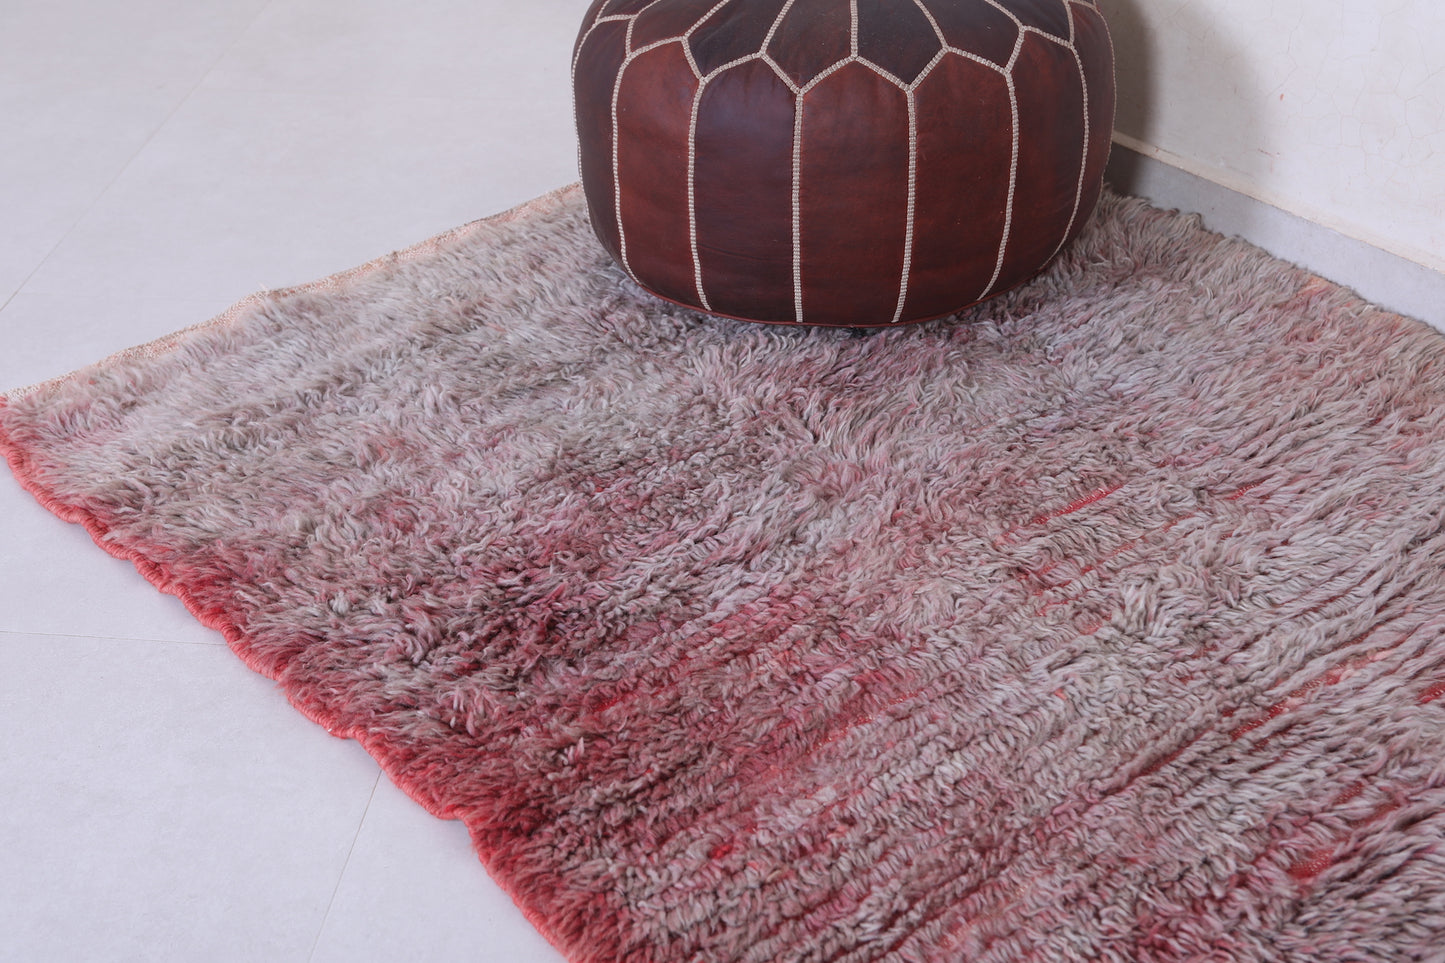 Vintage handmade moroccan berber runner rug 3.9 FT X 6.9 FT